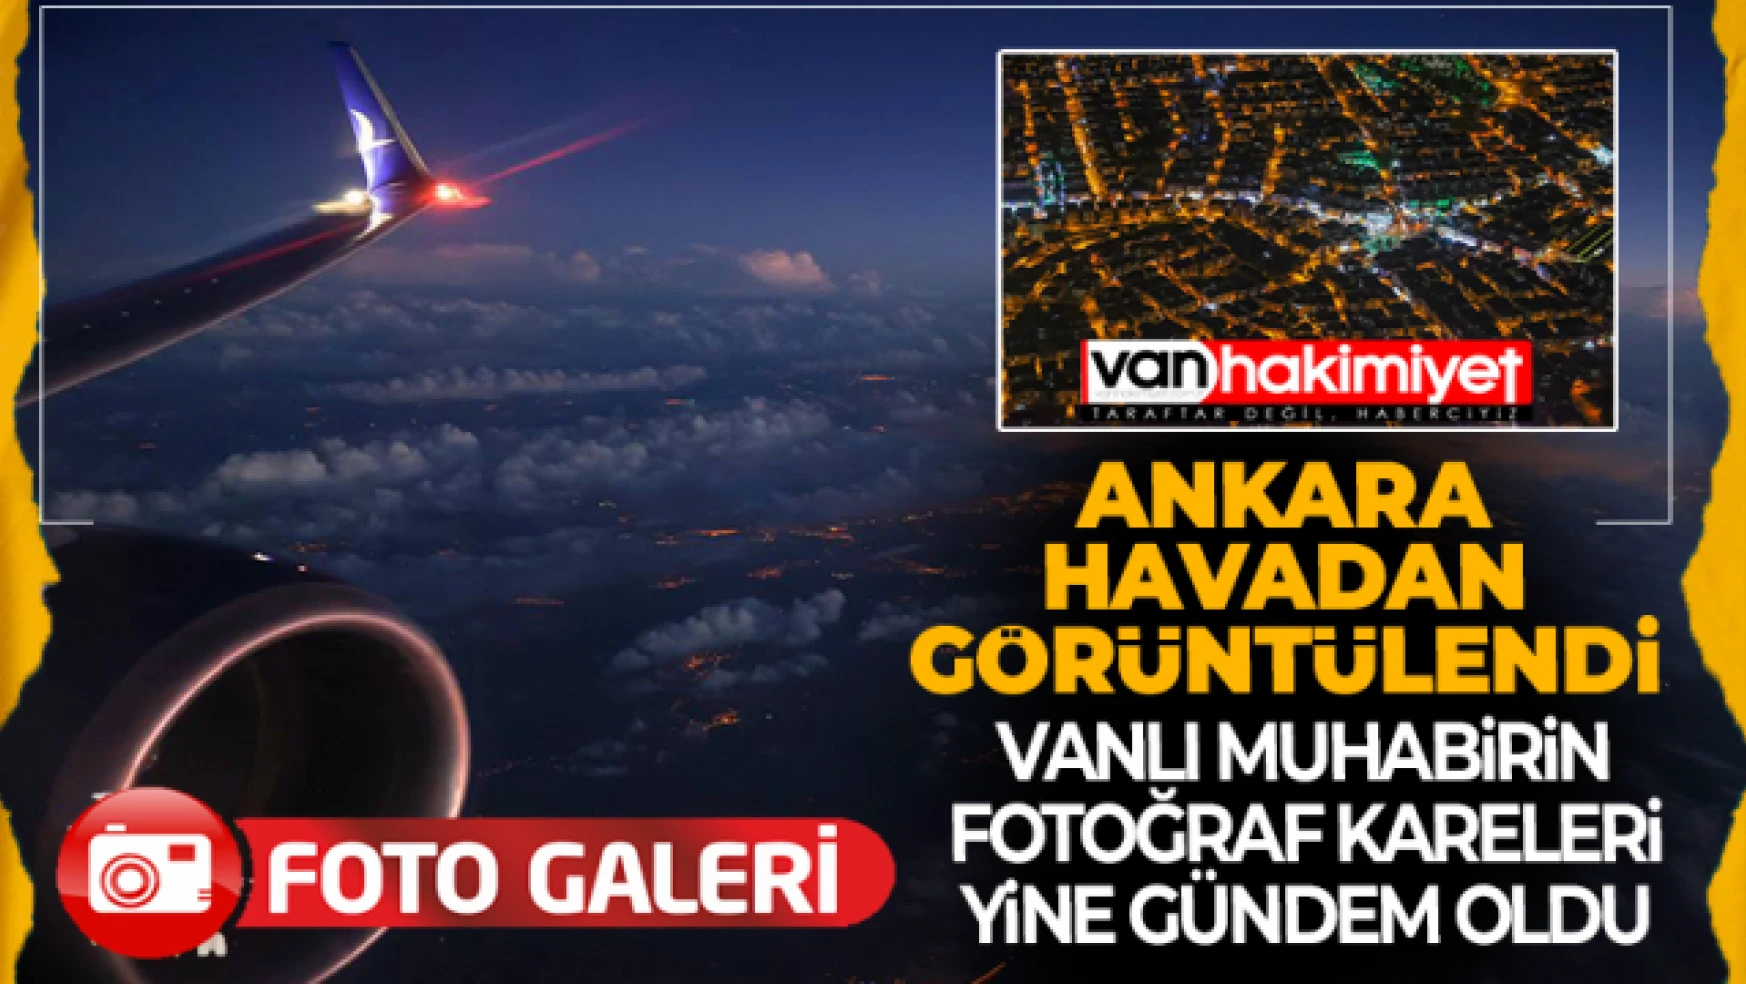 Vanlı Özkan Bilgin bu kez Ankara'yı havadan görüntüledi